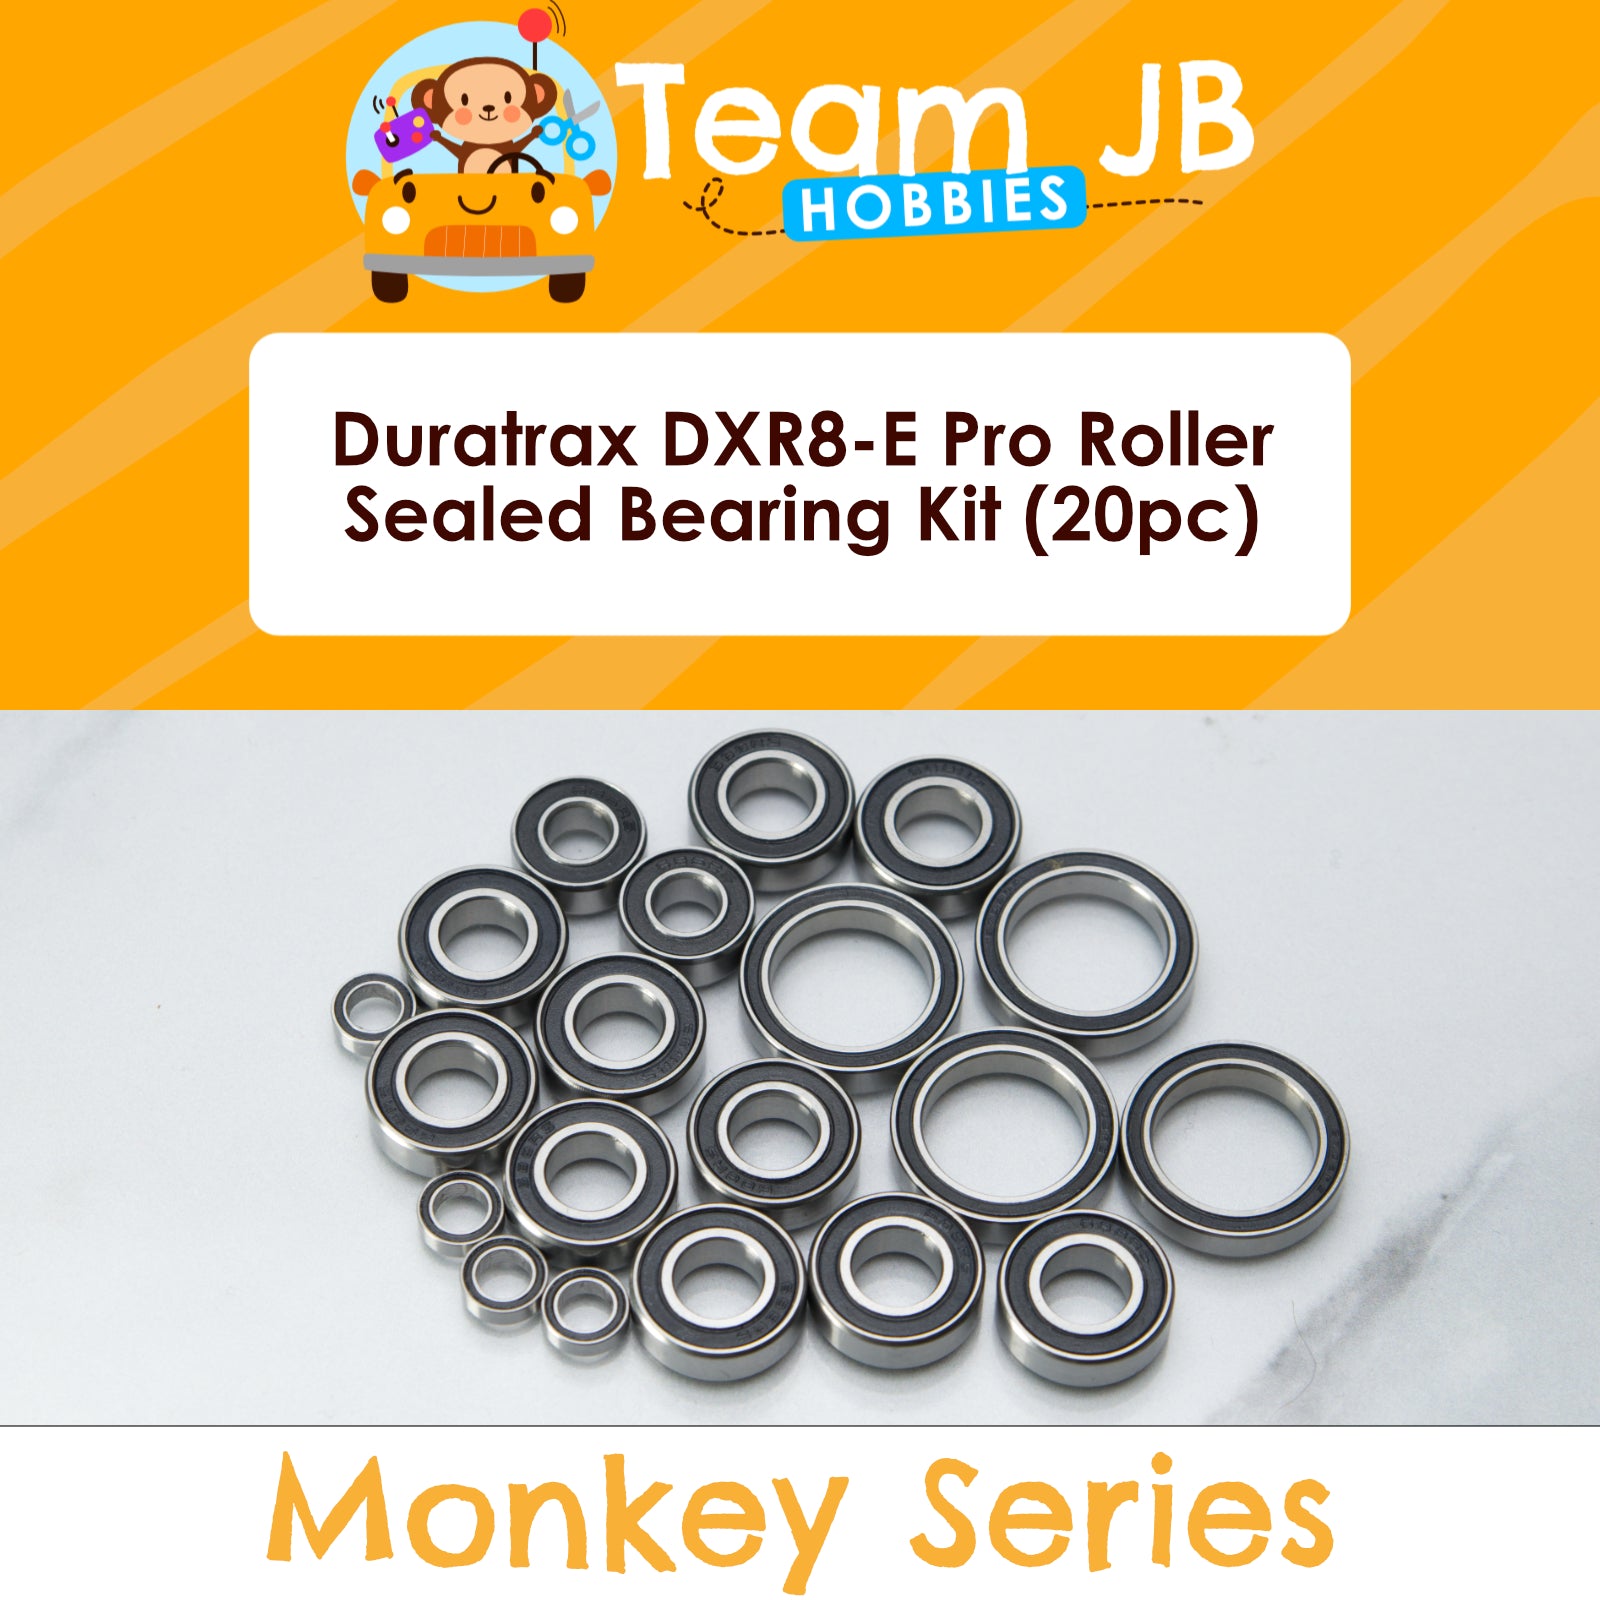 Duratrax DXR8-E Pro Roller - Sealed Bearing Kit